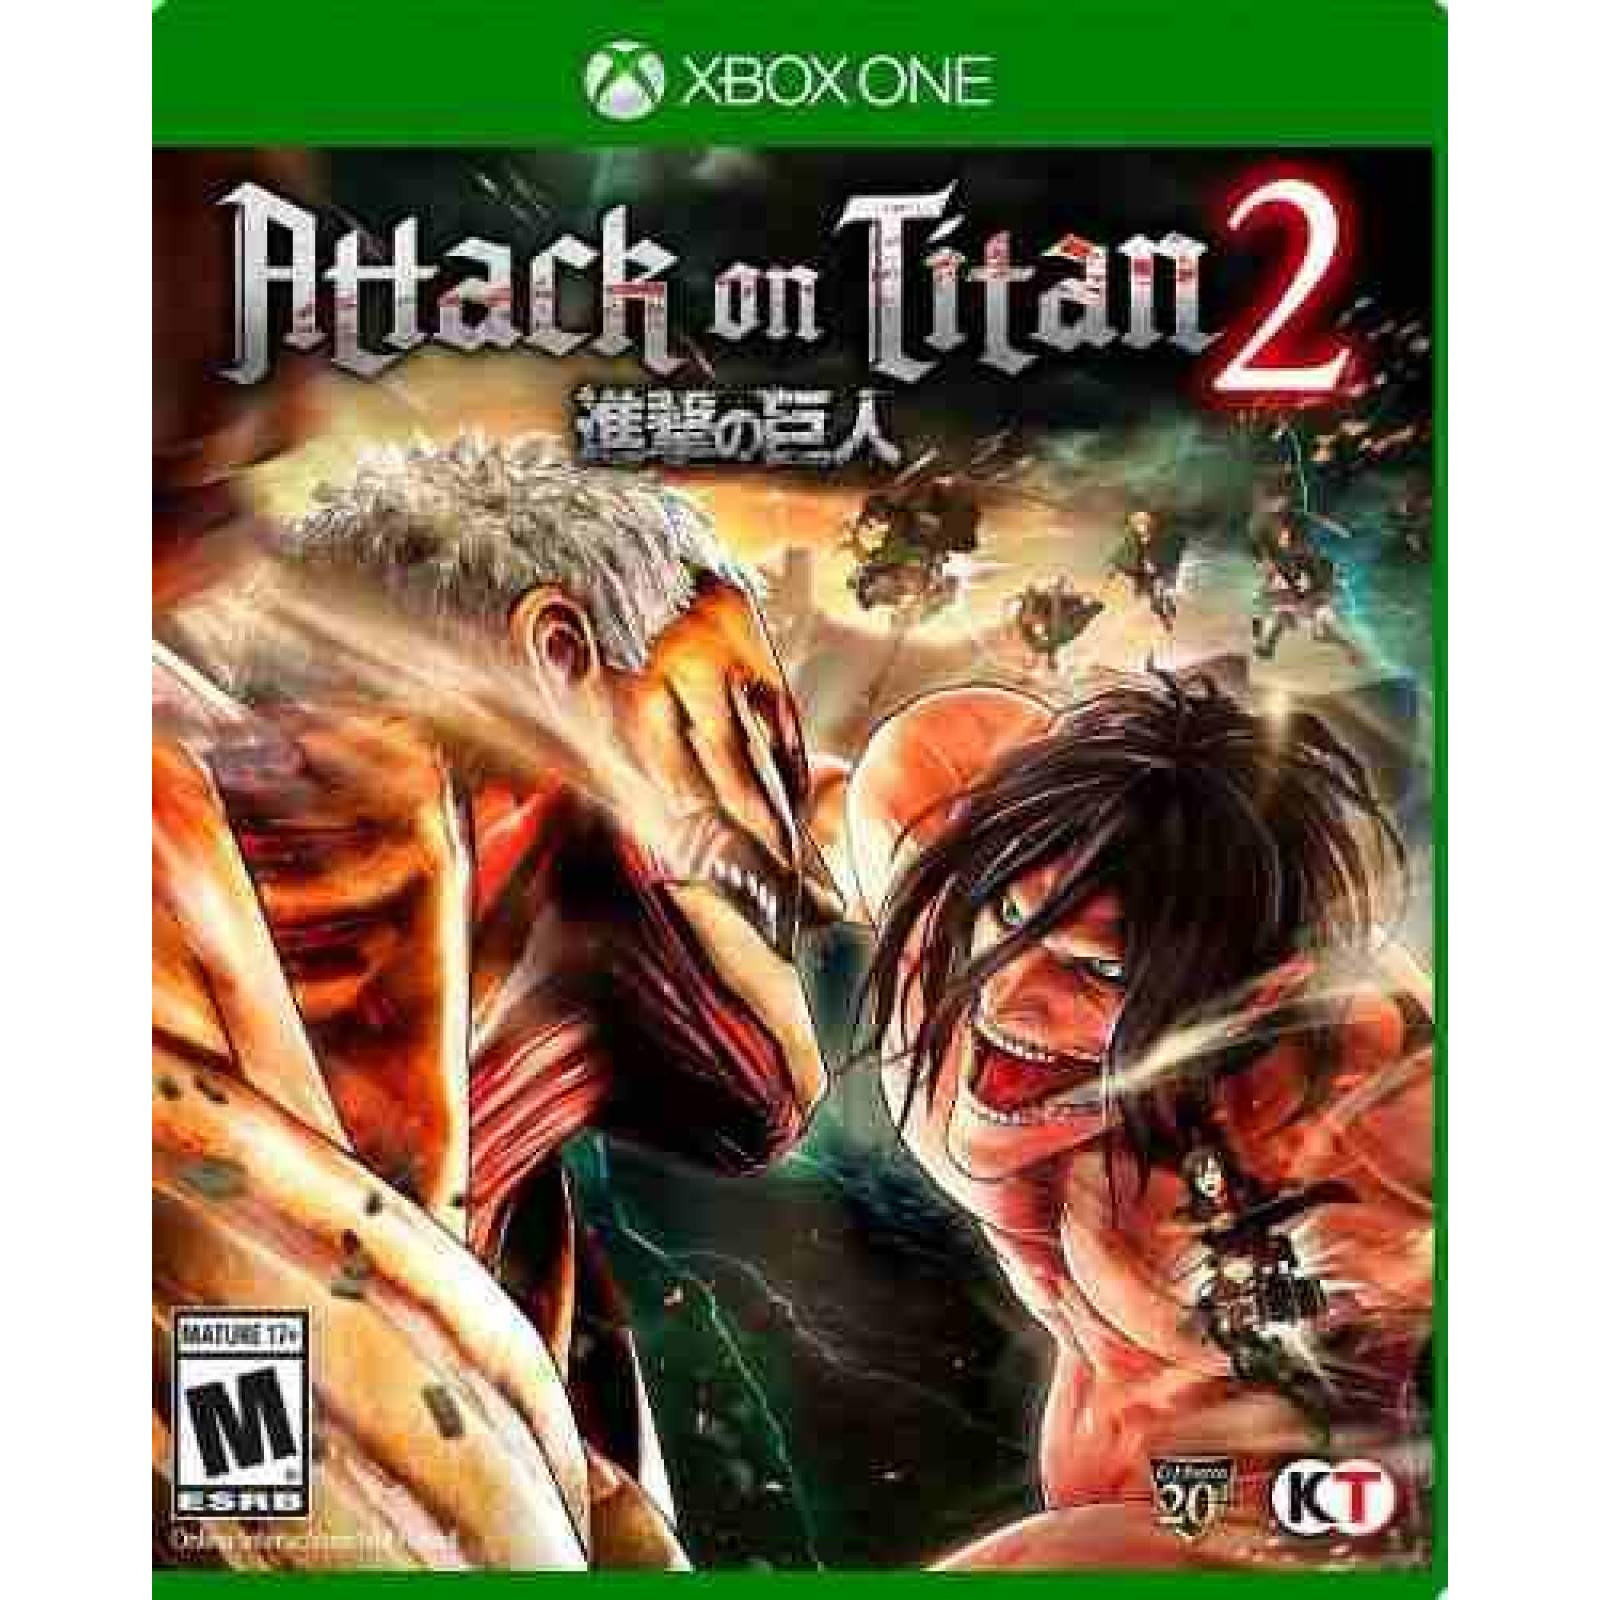 ATTACK ON TITAN 2 Xbox One S001 